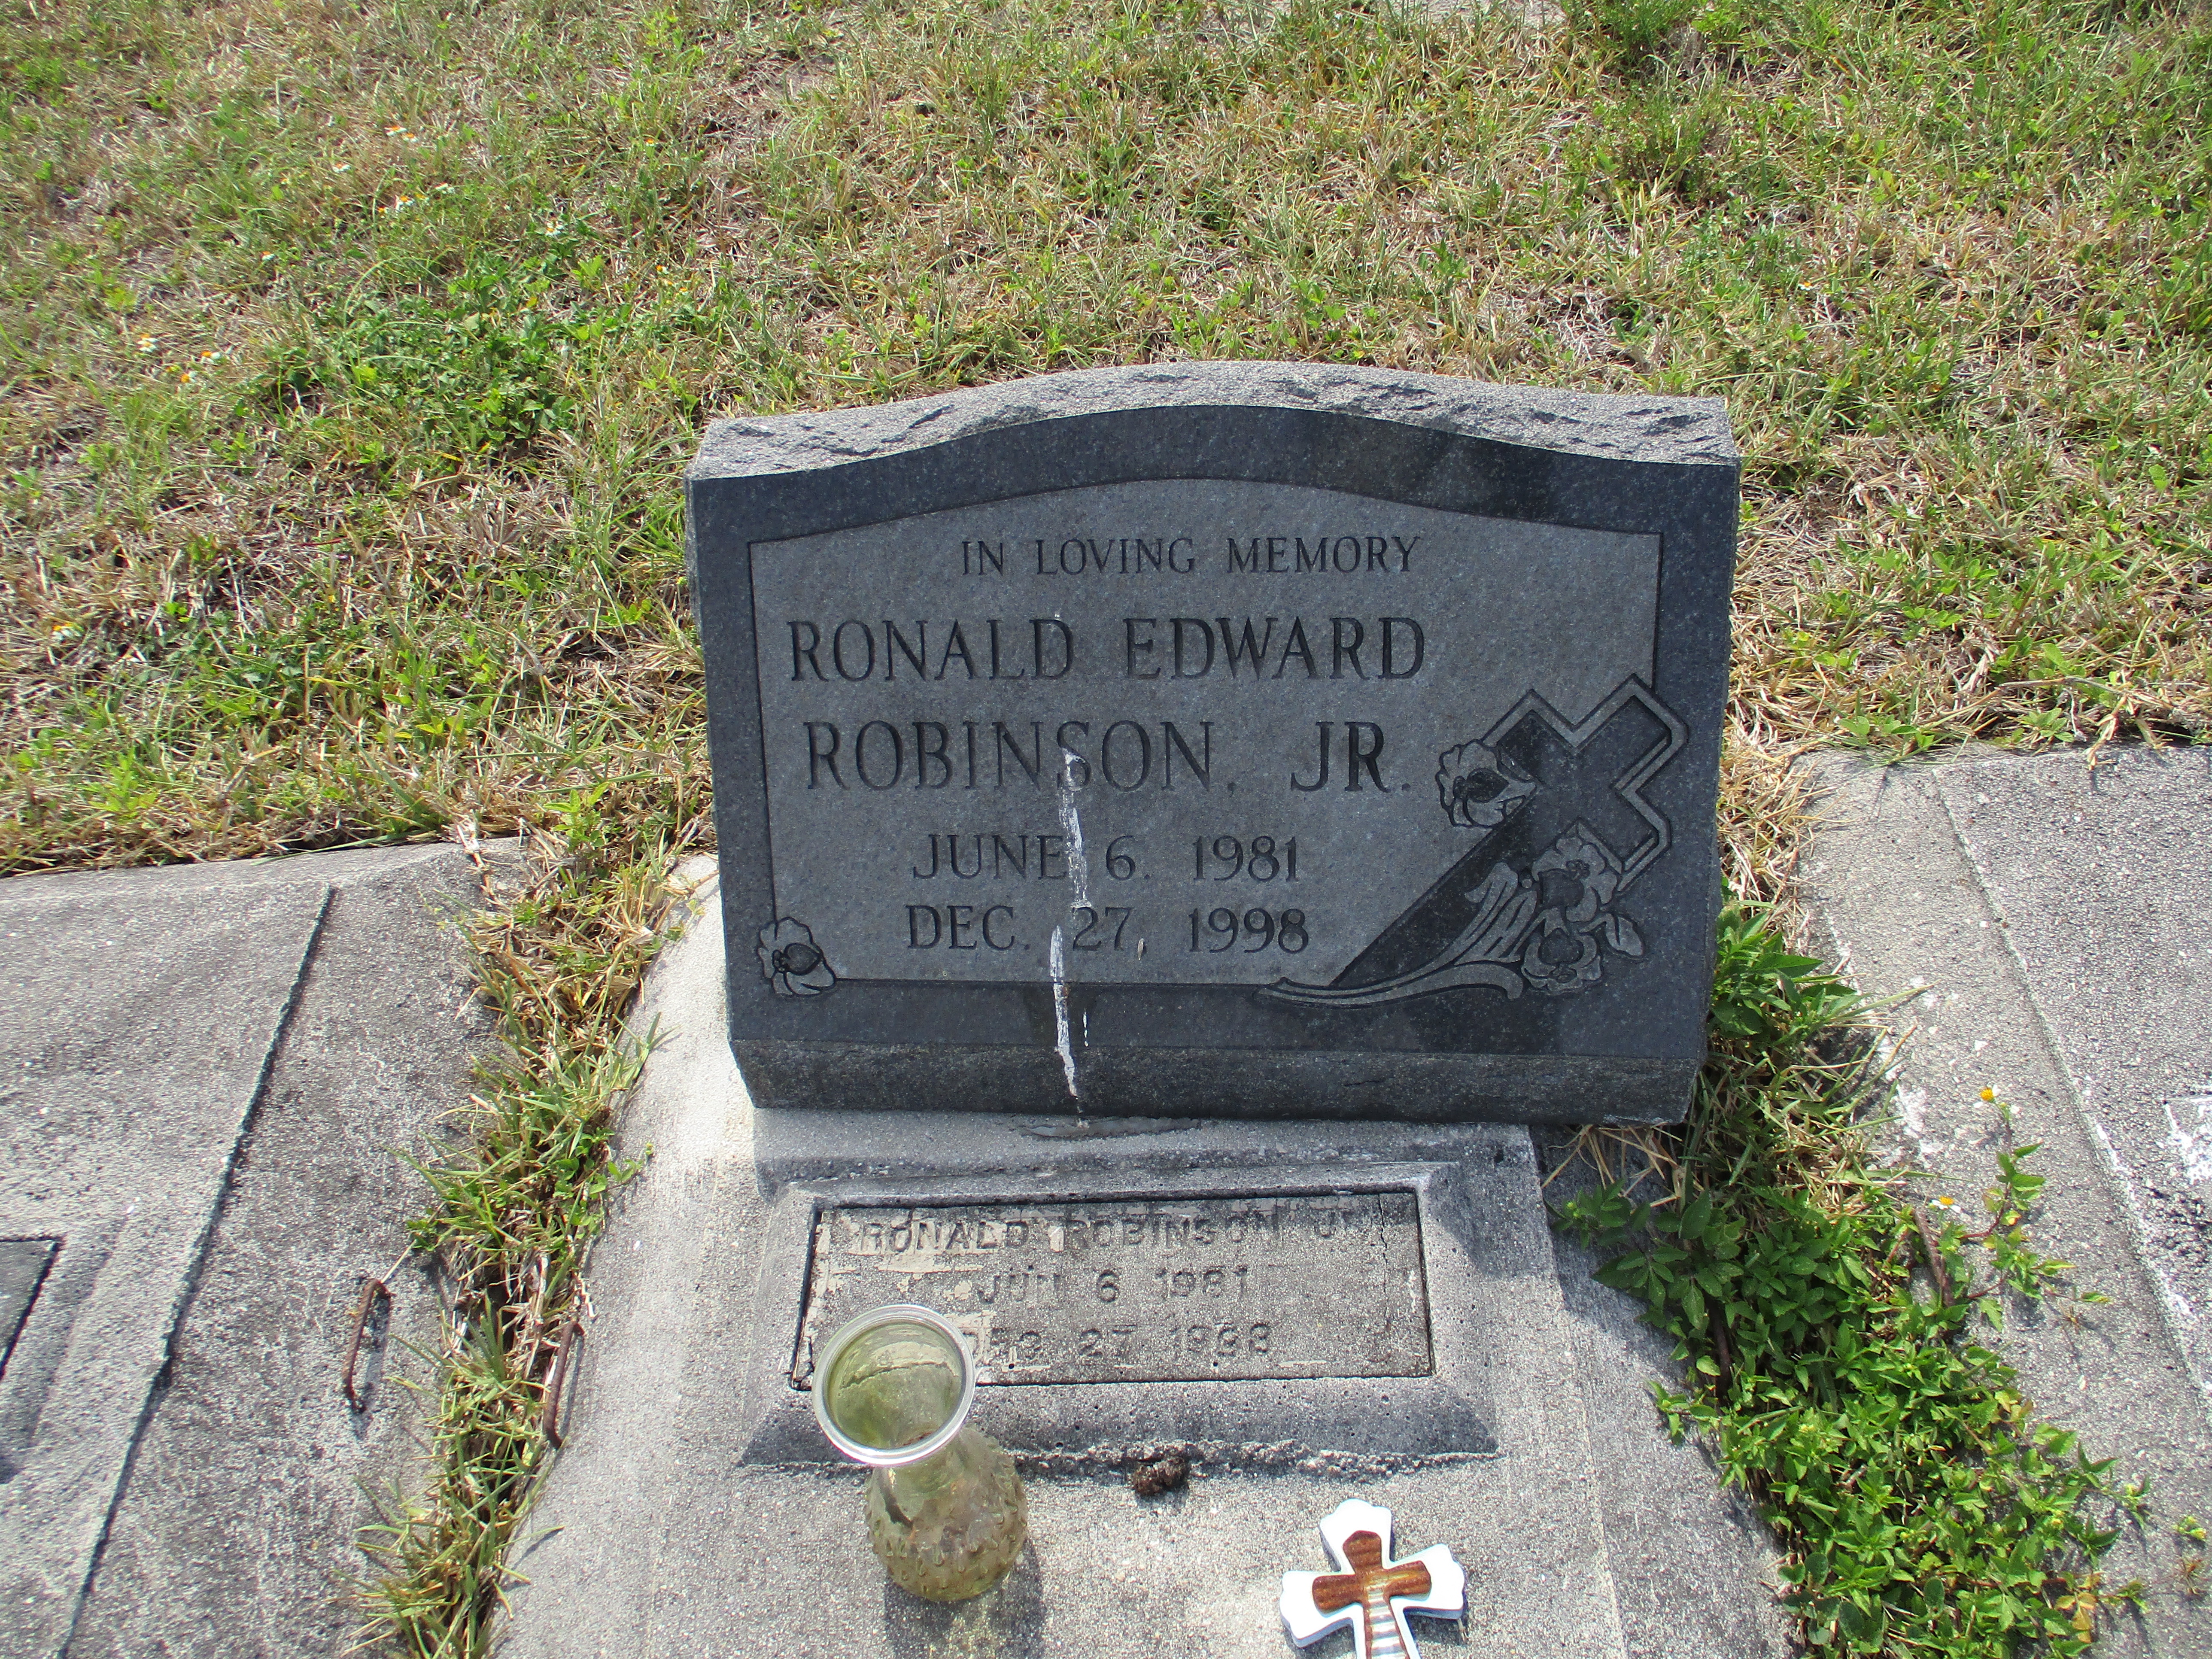 Ronald Edward Robinson, Jr